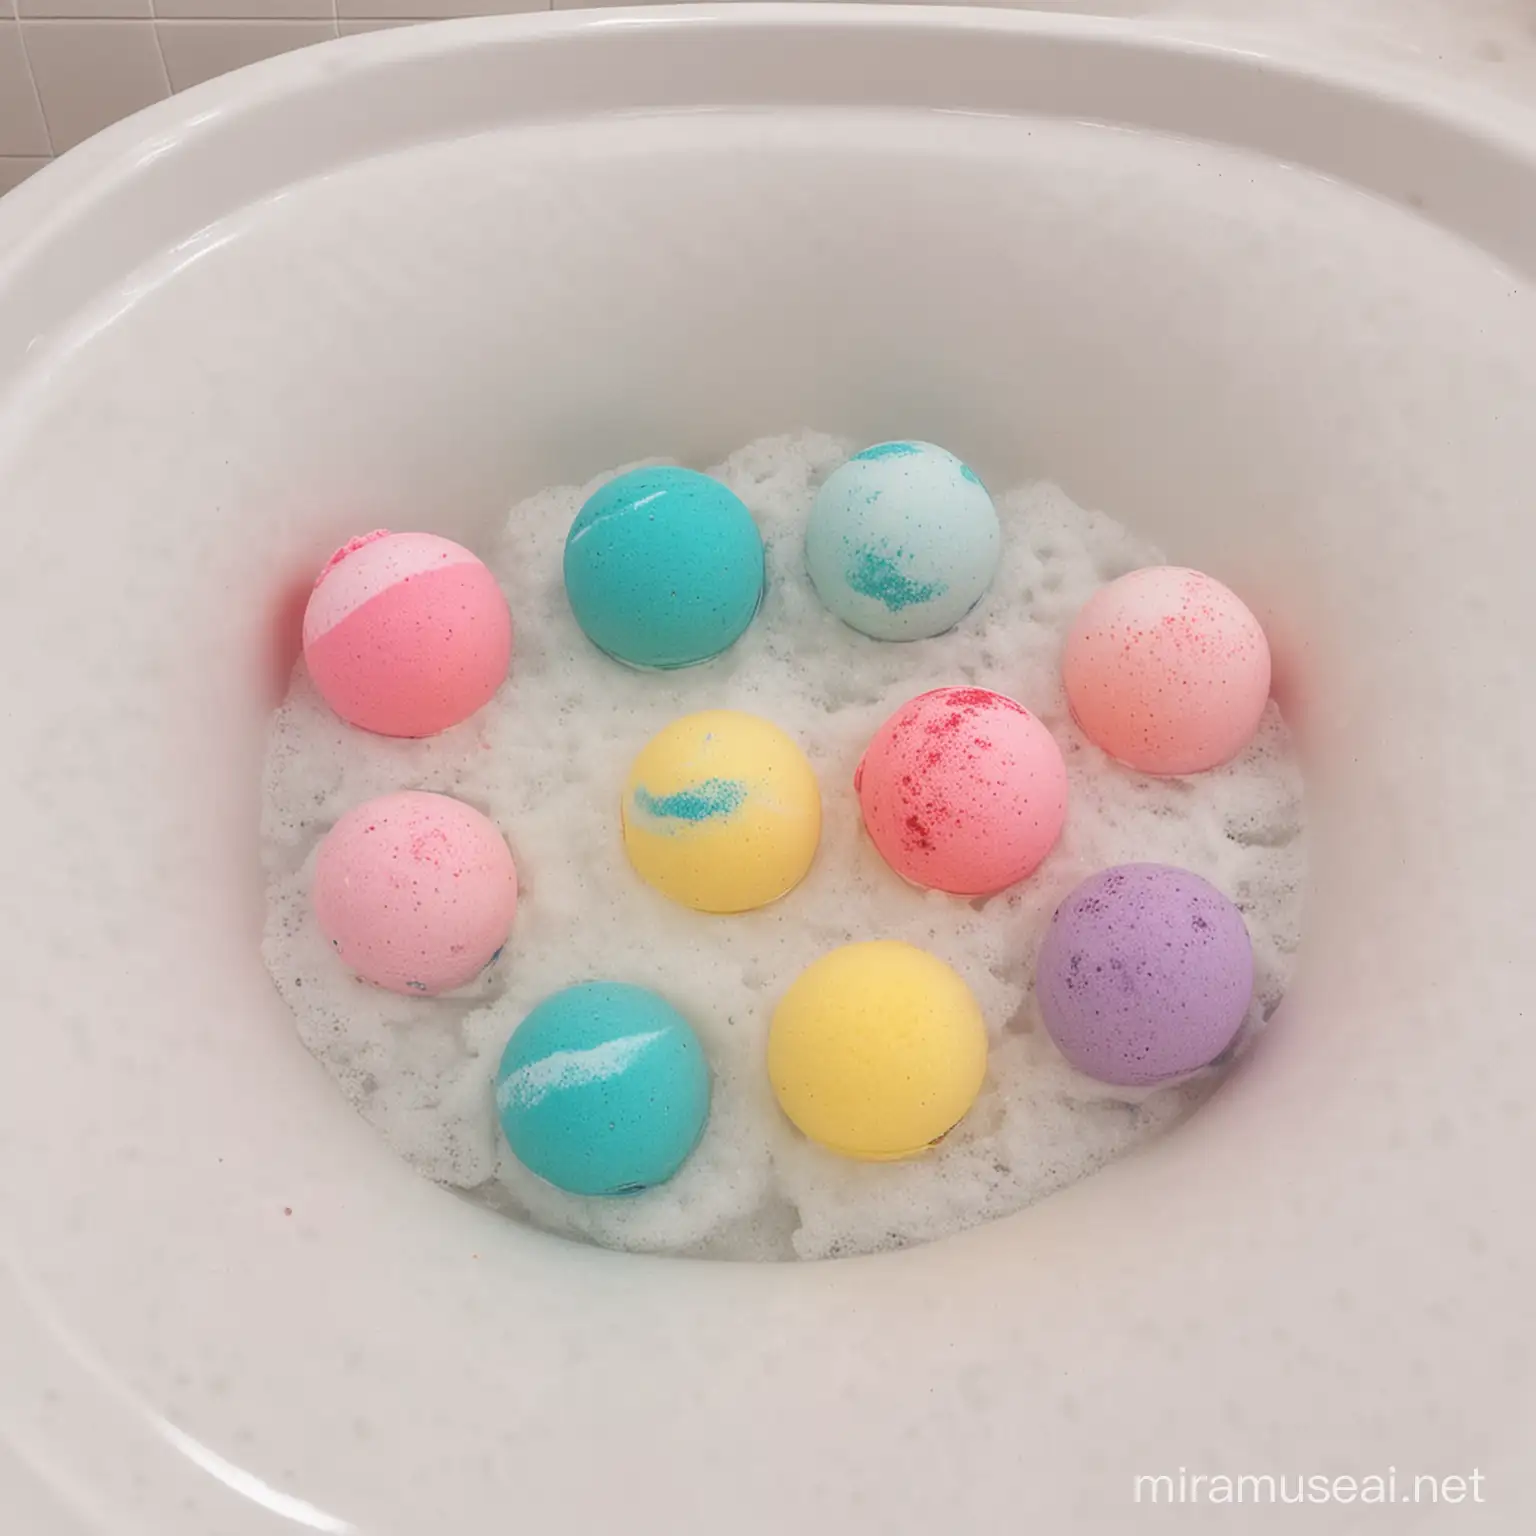 洗浴球放在浴缸里面慢慢融化，散发出多种色彩